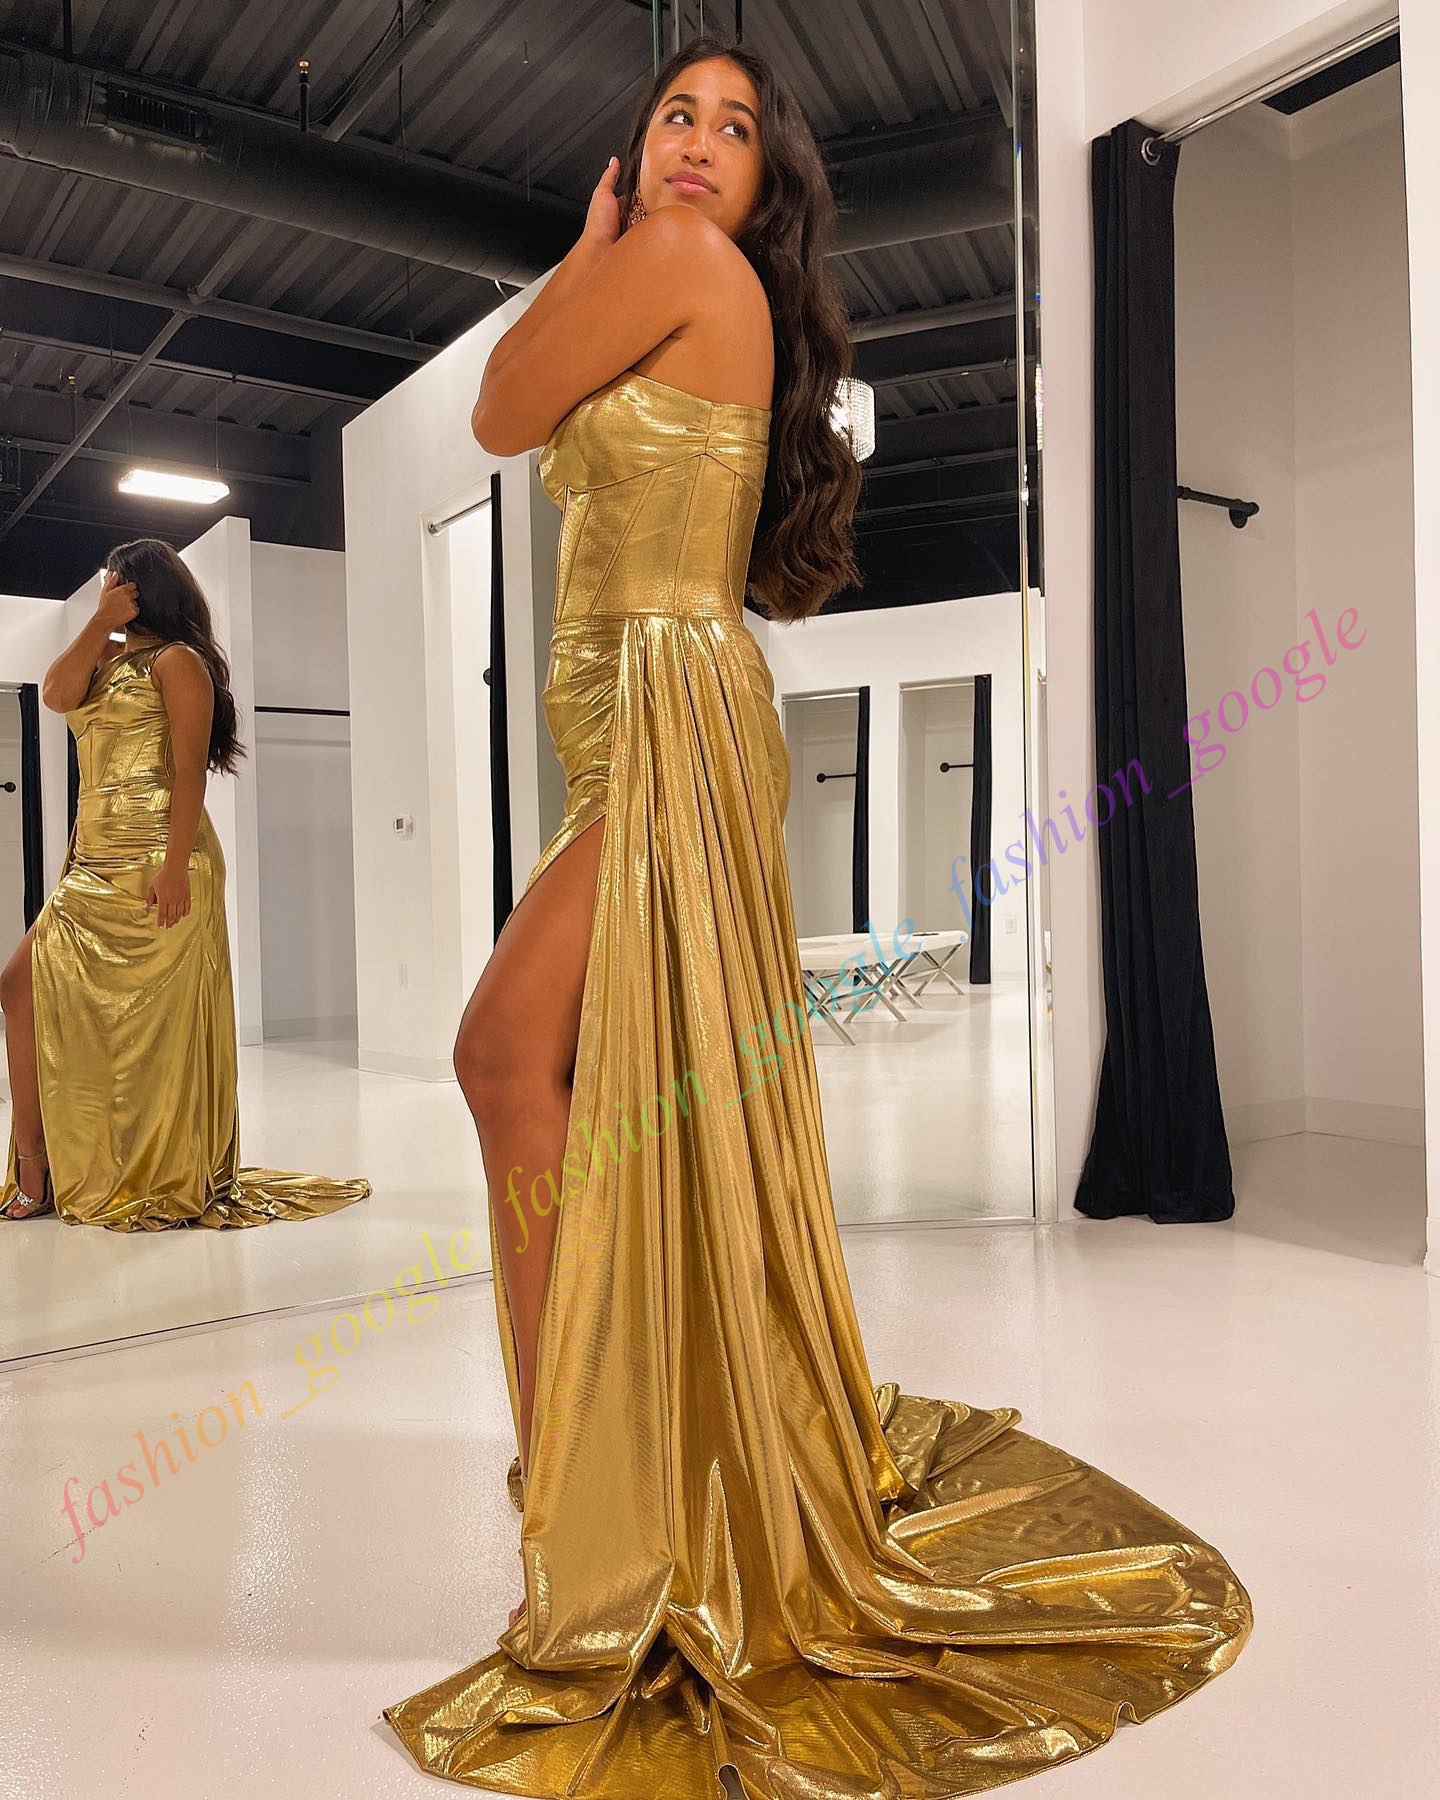 Gold Metallic Prom Dress One Rzemant Długa zima formalna impreza imprezowa Suknia Ruched High Slit Silver Royal-Blue Red Carpet Runway Oscar Gala Pageant Side nakładka